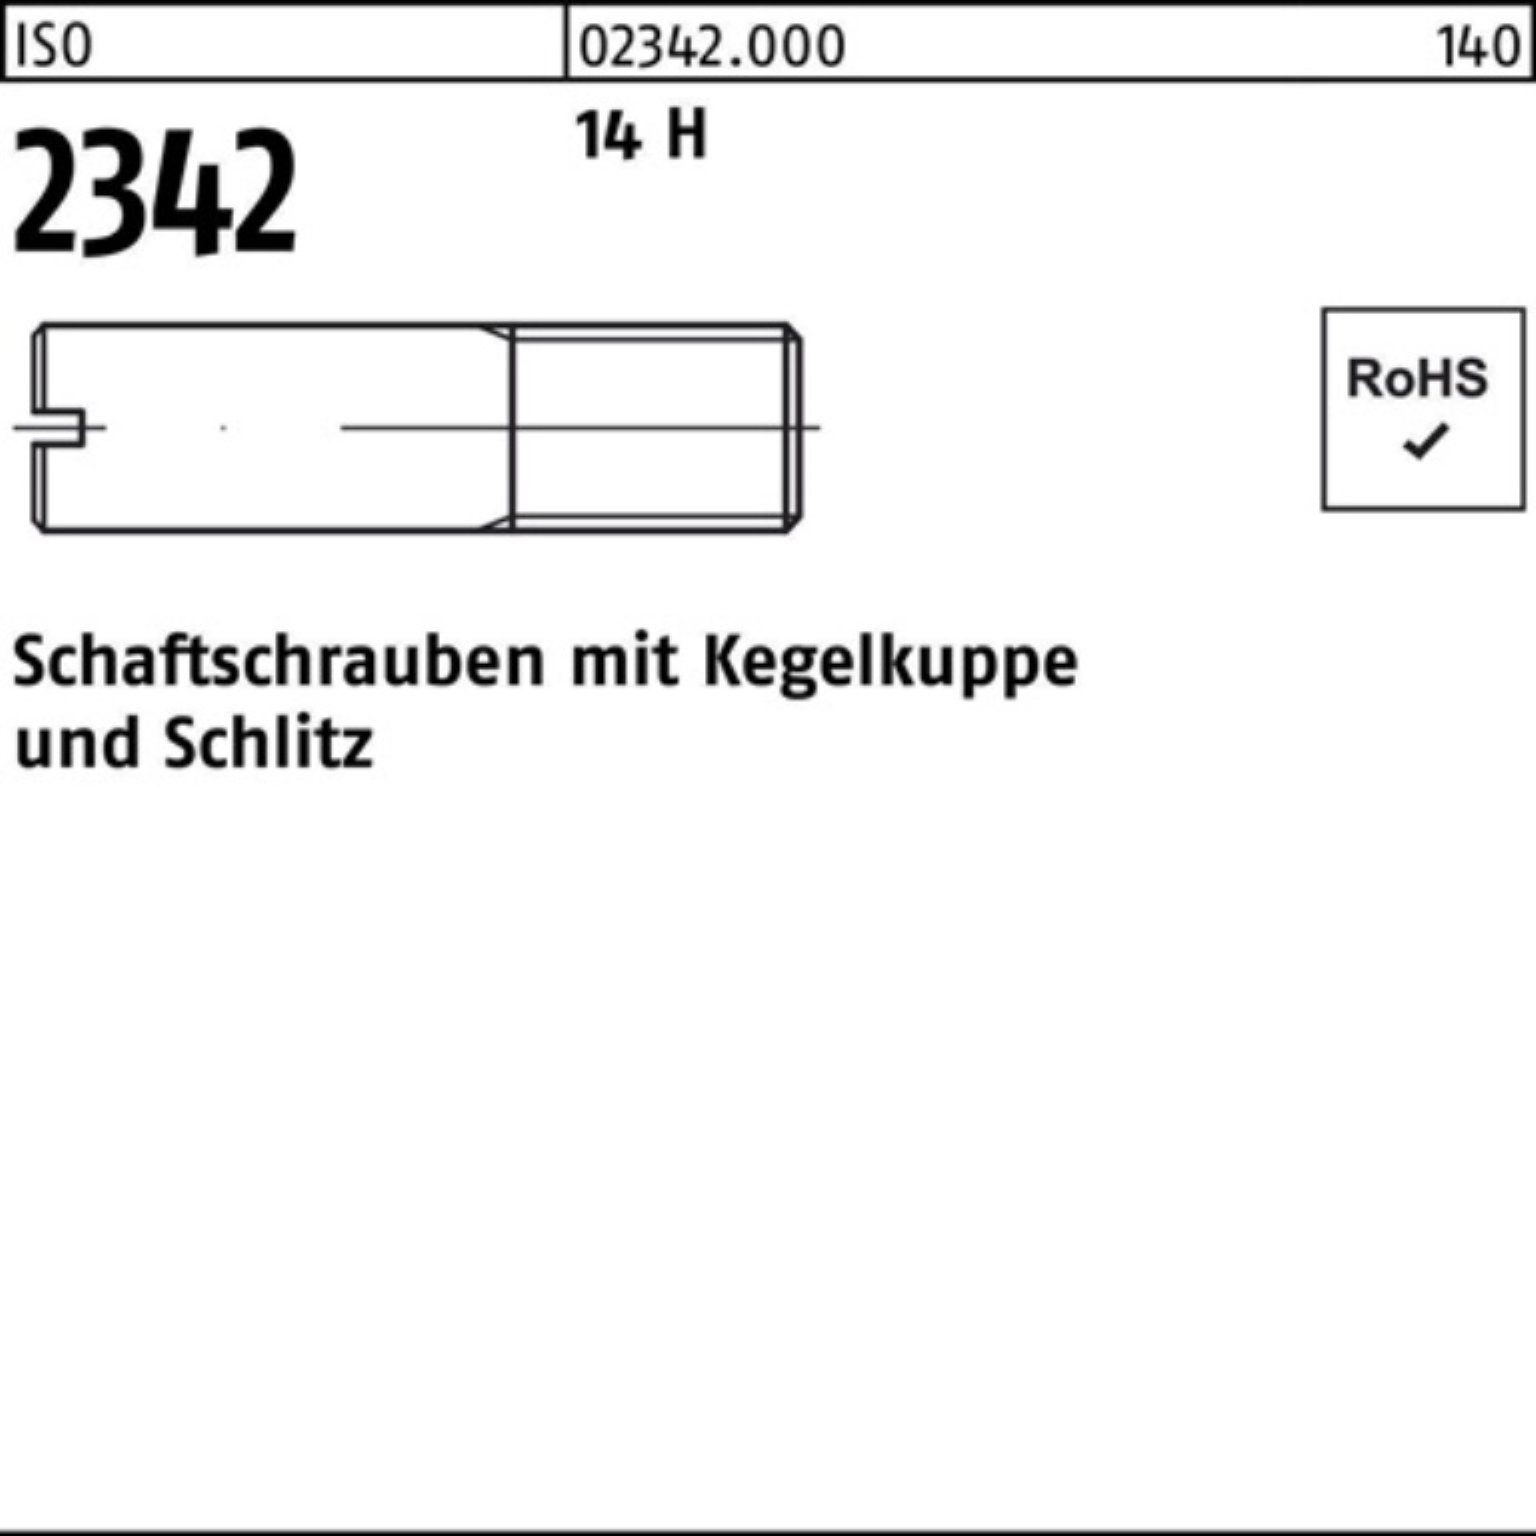 Reyher Schraube 100er Pack Schaftschraube ISO 2342 Kegelkuppe/Schlitz M3x 8 14 H 100 S